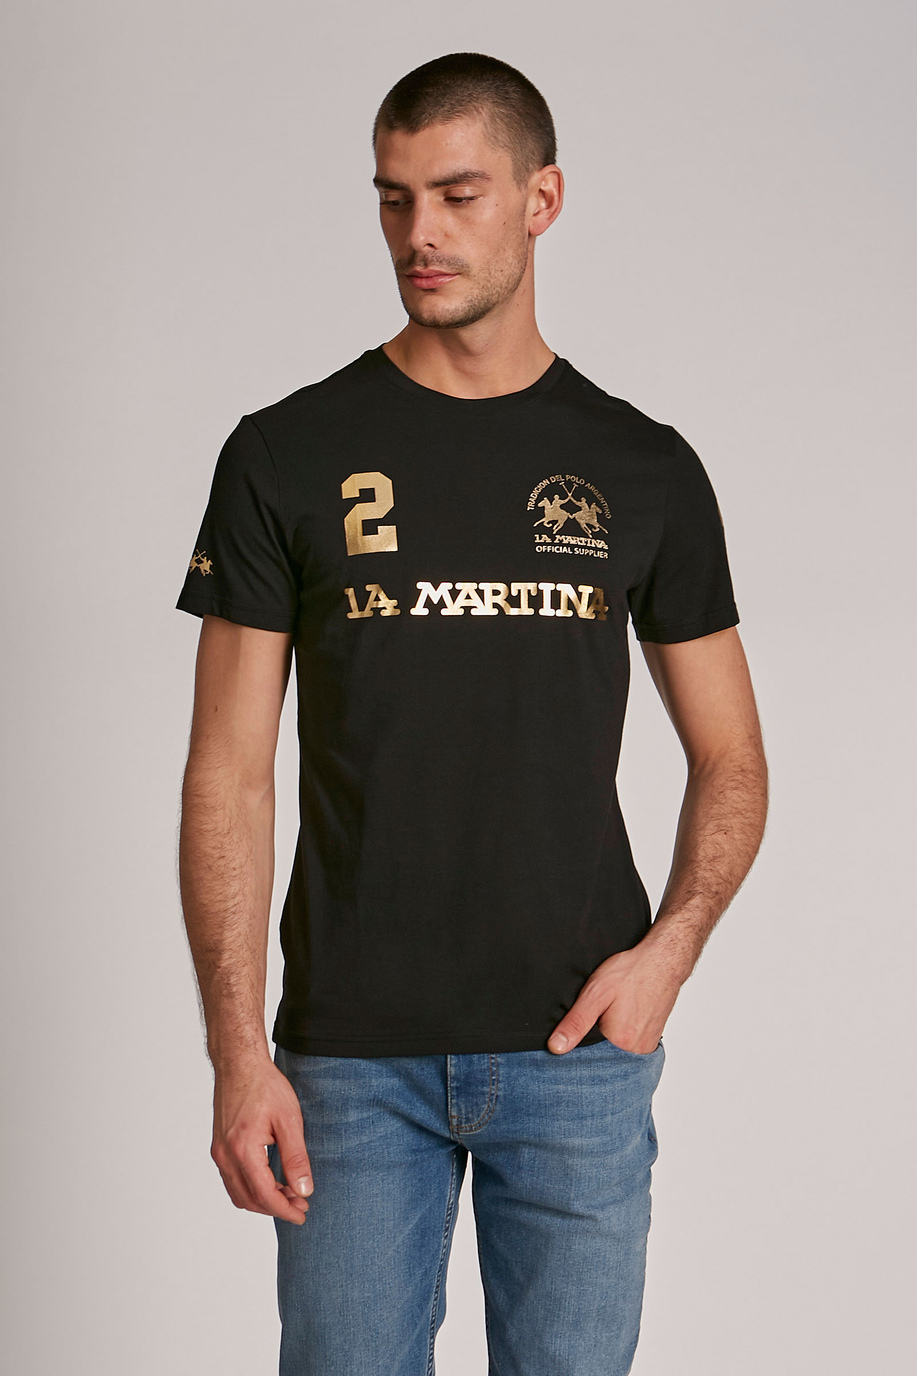 Herren-T-Shirt mit kurzem Arm aus Baumwolle im Regular Fit - presale | La Martina - Official Online Shop